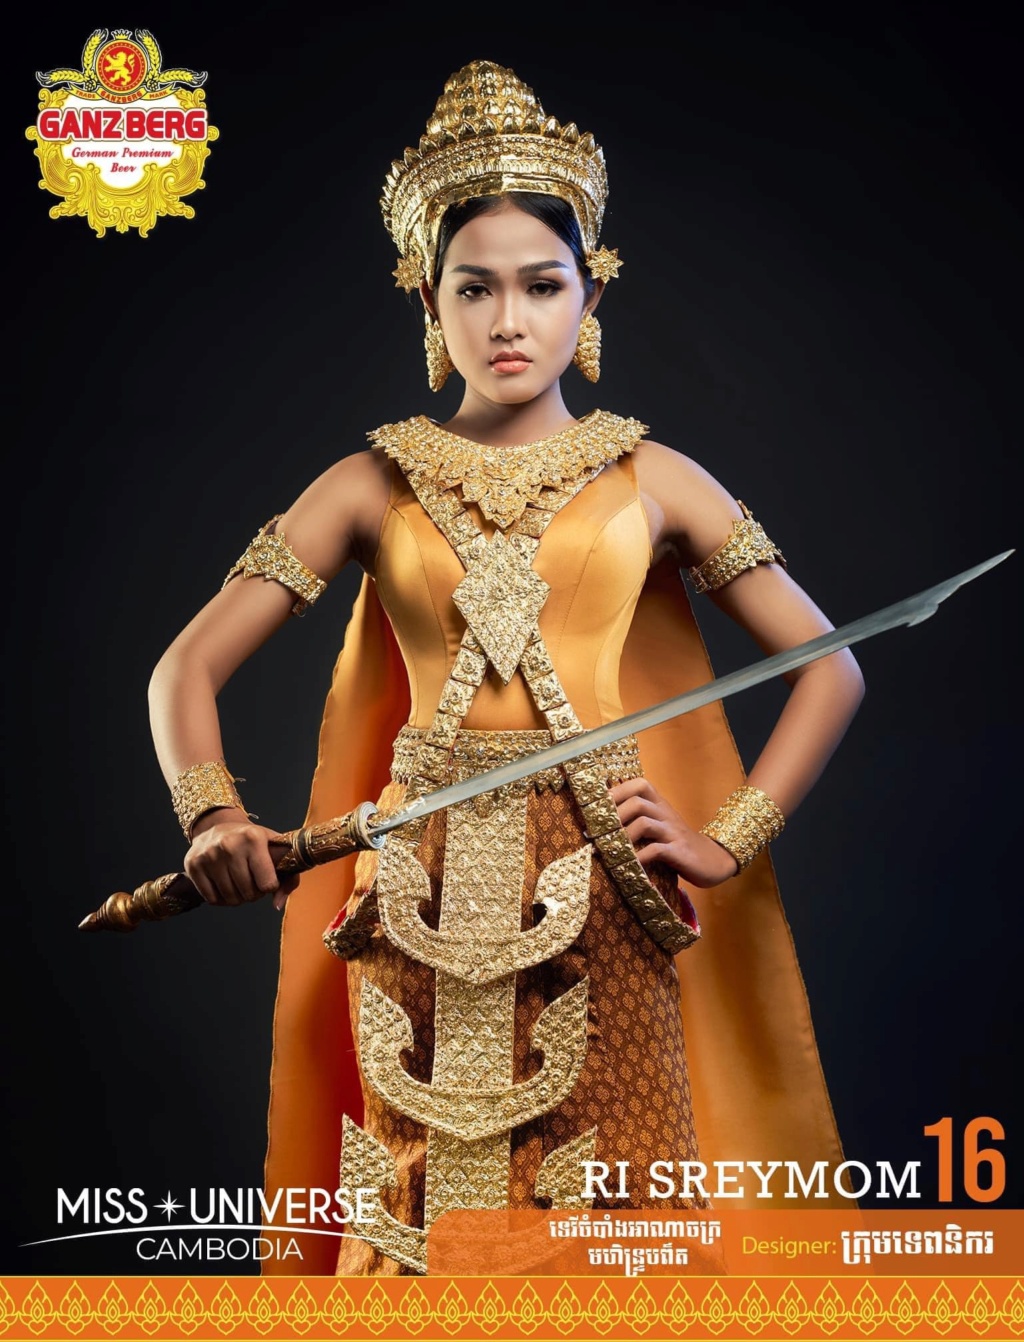 Miss Universe Cambodia 2021 is Ngin Marady 1652